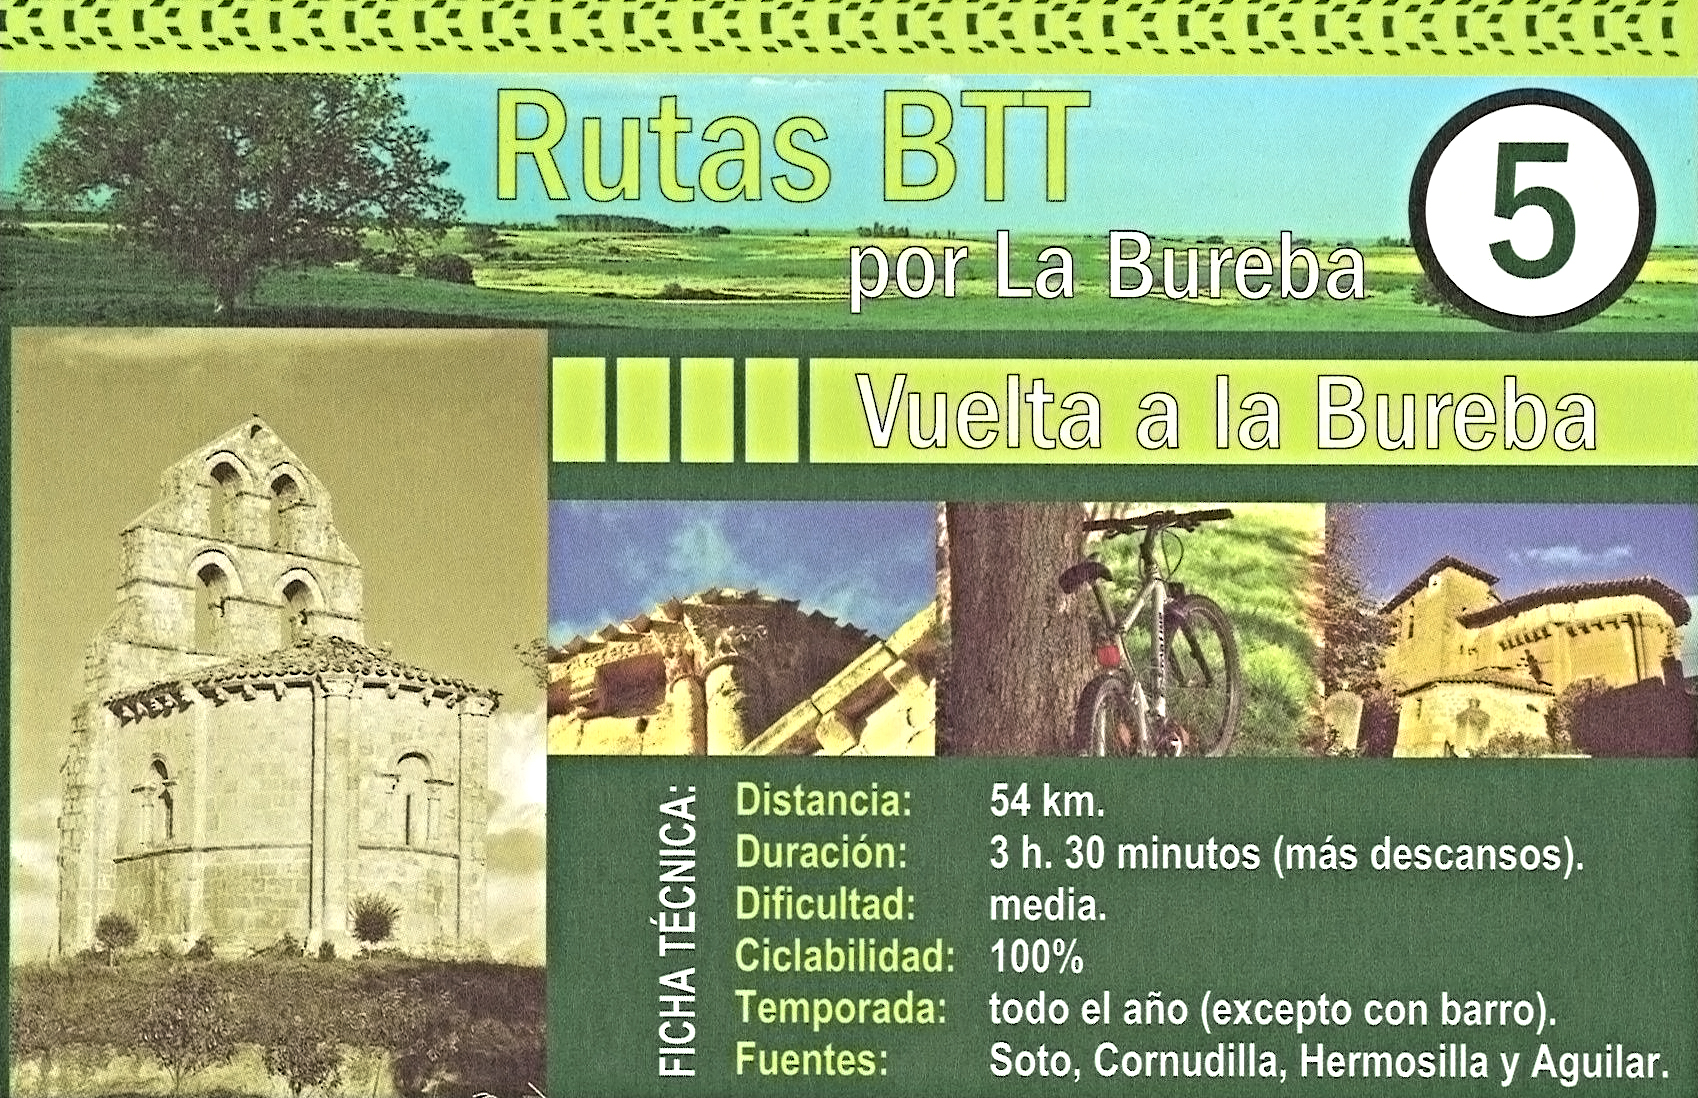 Rutas BTT, Comarca de La Bureba - Burgos - Monasterio de San Salvador Oña -Comarca de La Bureba- Burgos ✈️ Foro Castilla y León